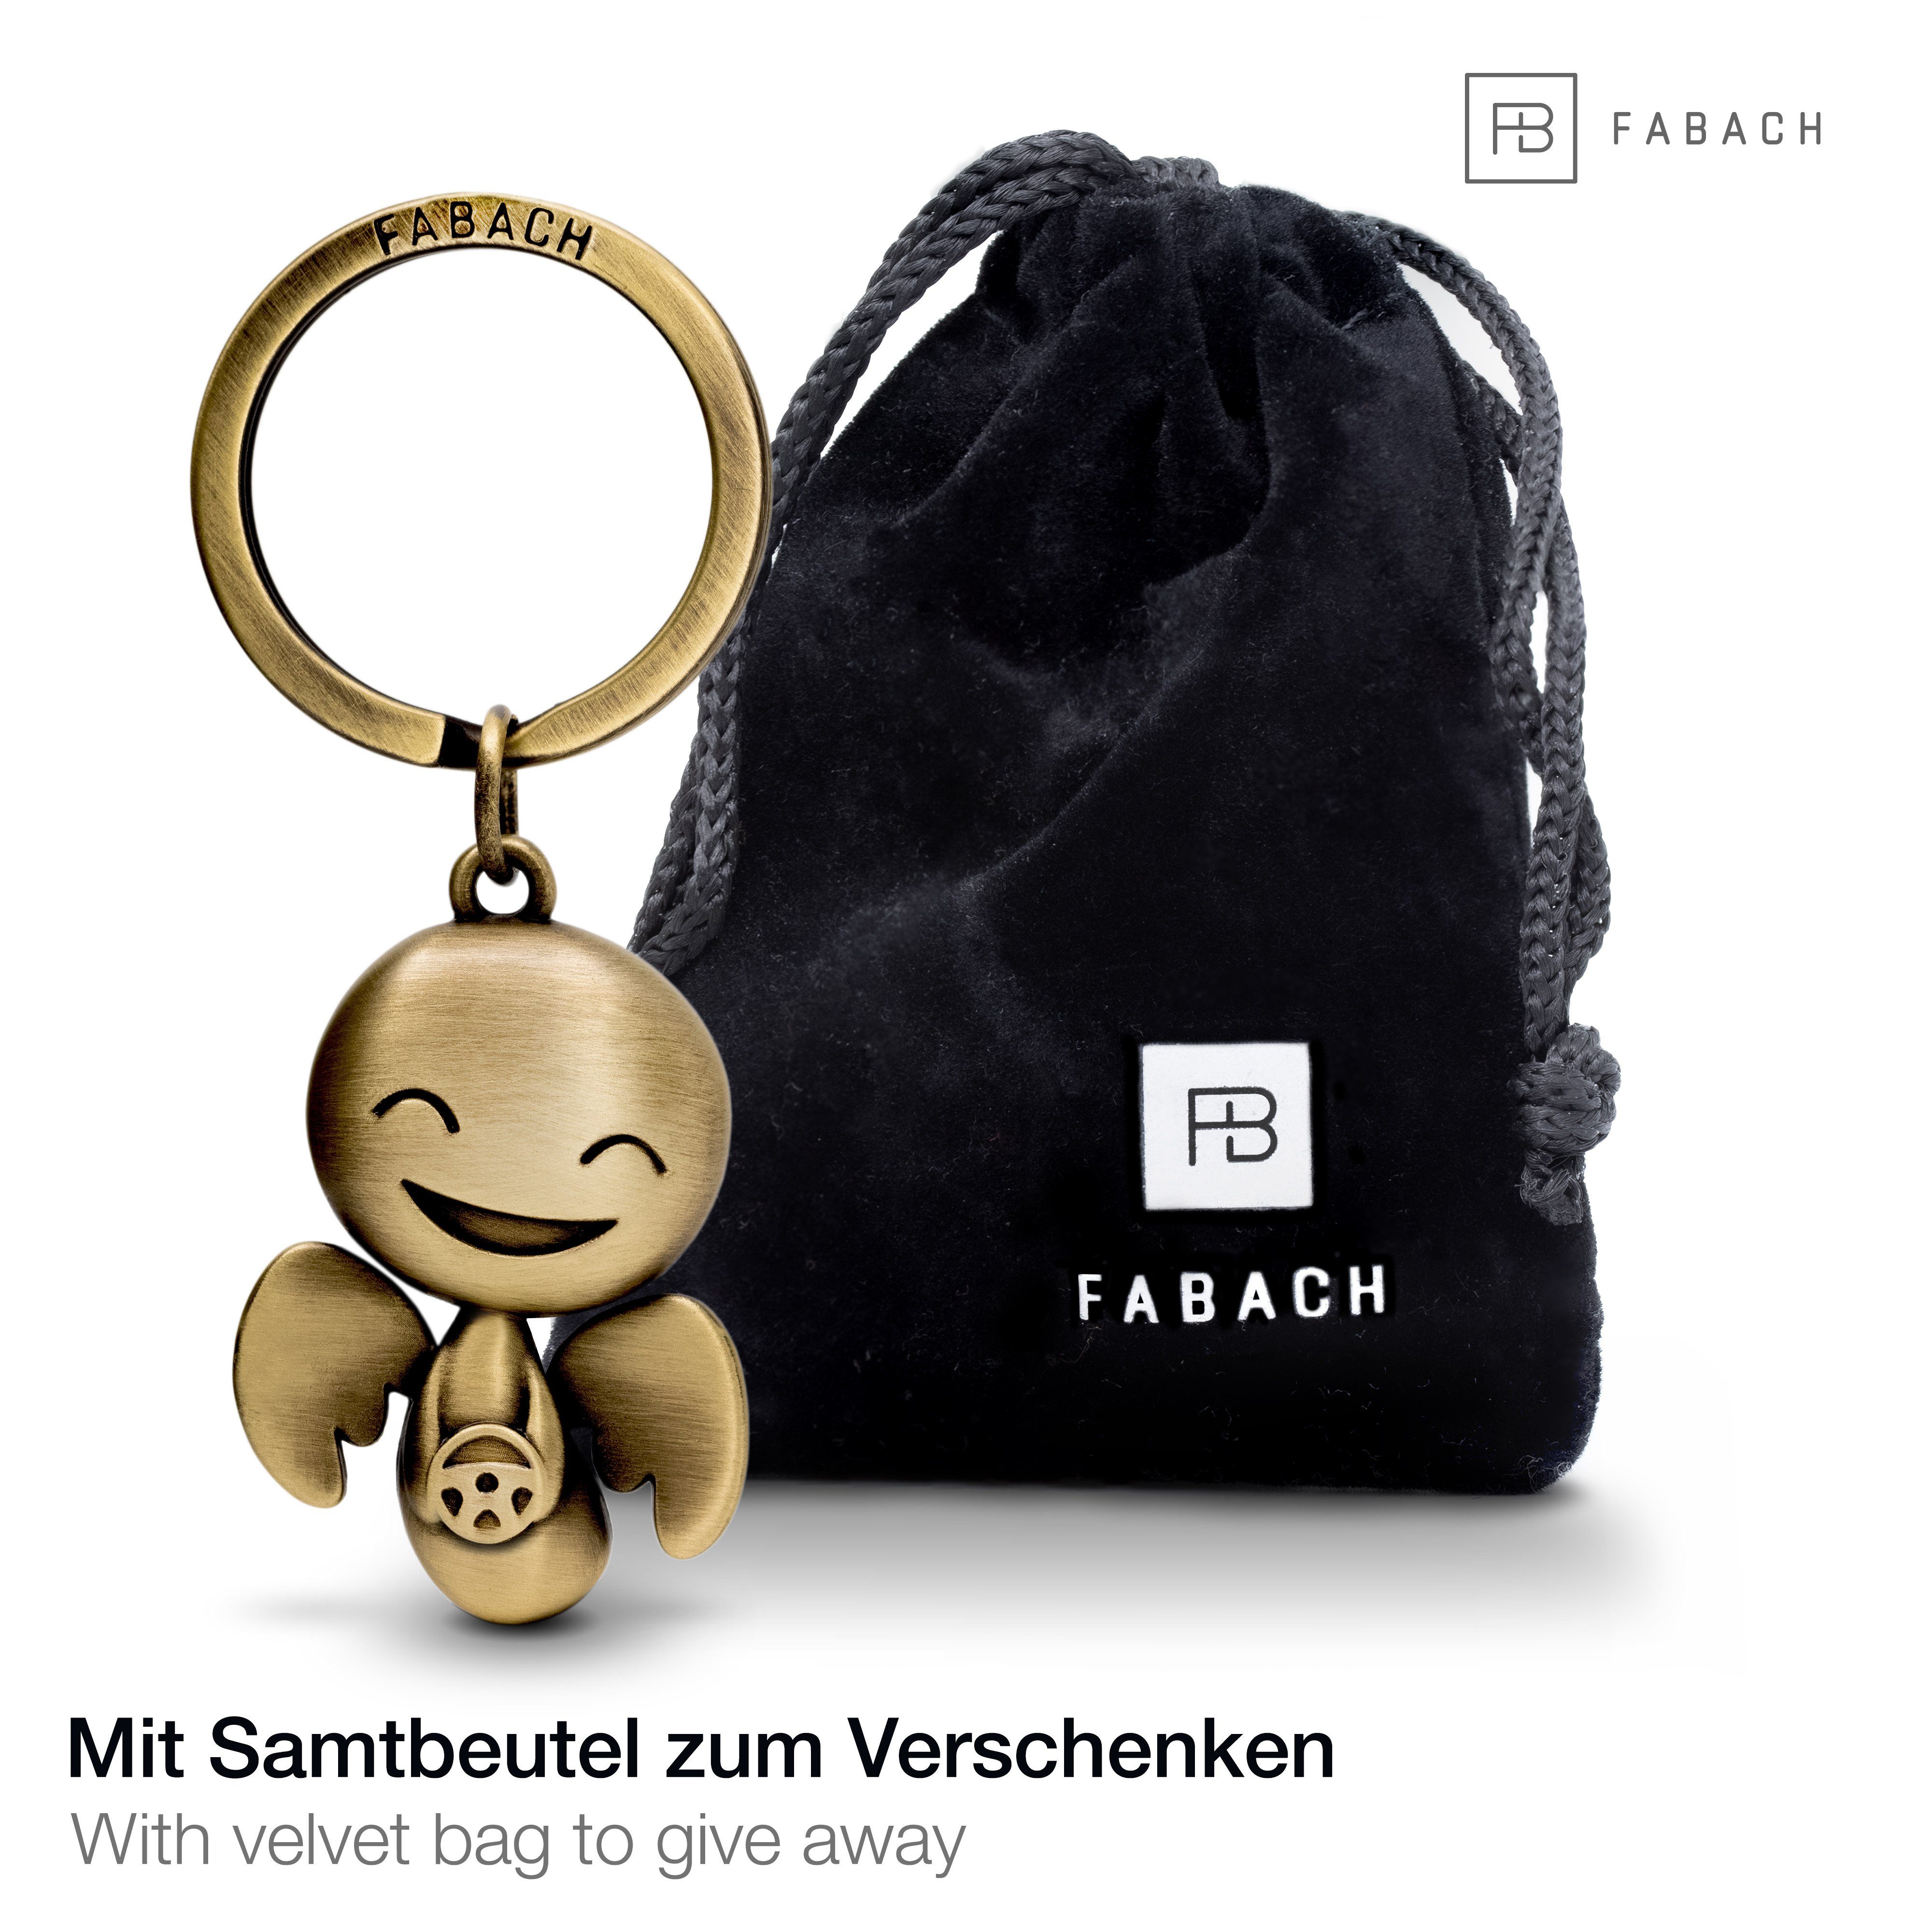 FABACH Schlüsselanhänger Schutzengel Happy mit Bronze Geschenk Lenkrad Antique Führerschein Glücksbringer 